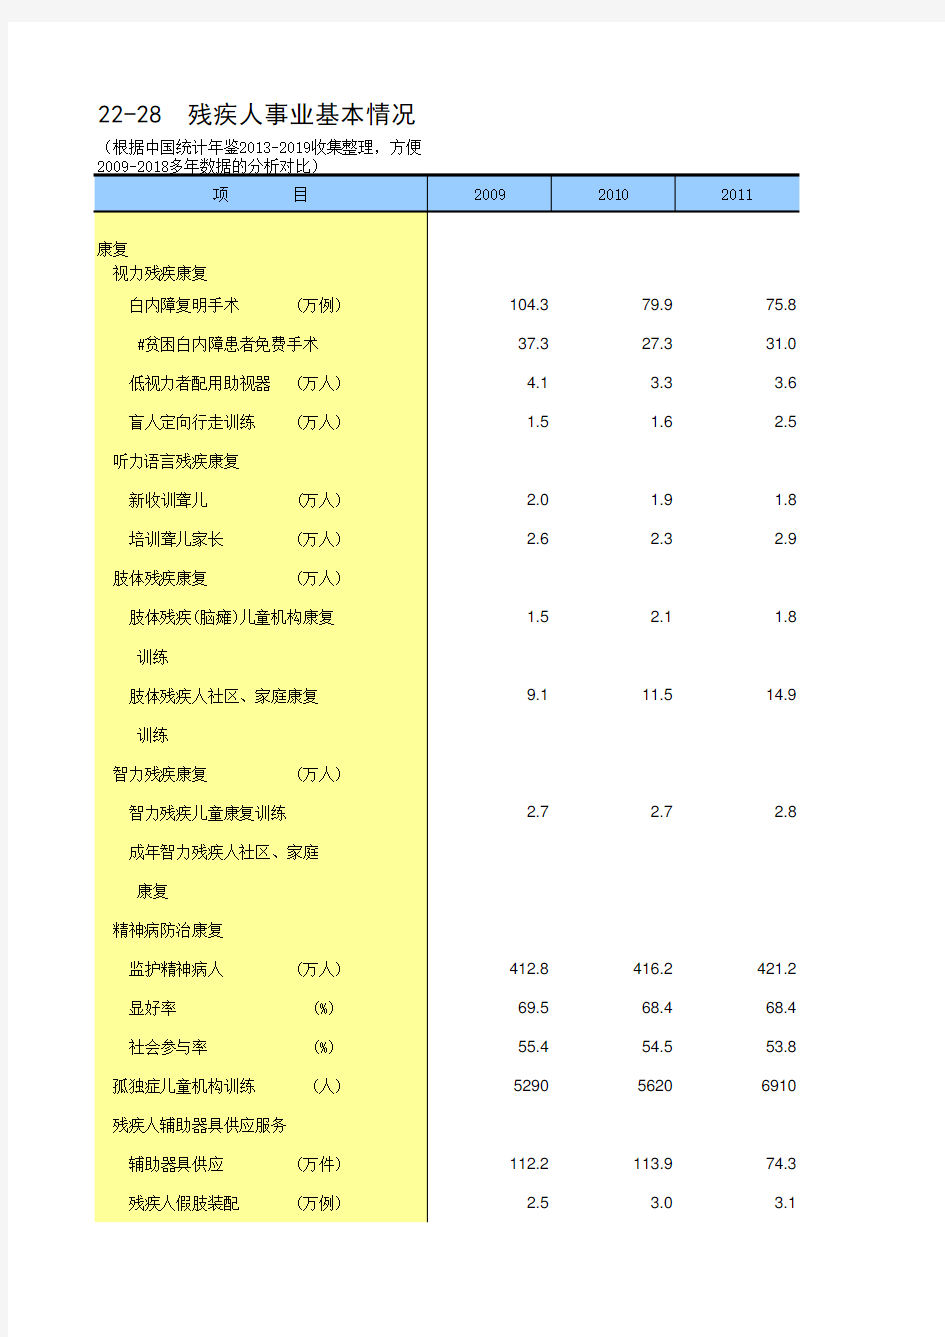 22-28 中国统计年鉴数据处理：残疾人事业基本情况(仅全国指标,便于2009-2018多年数据分析对比)